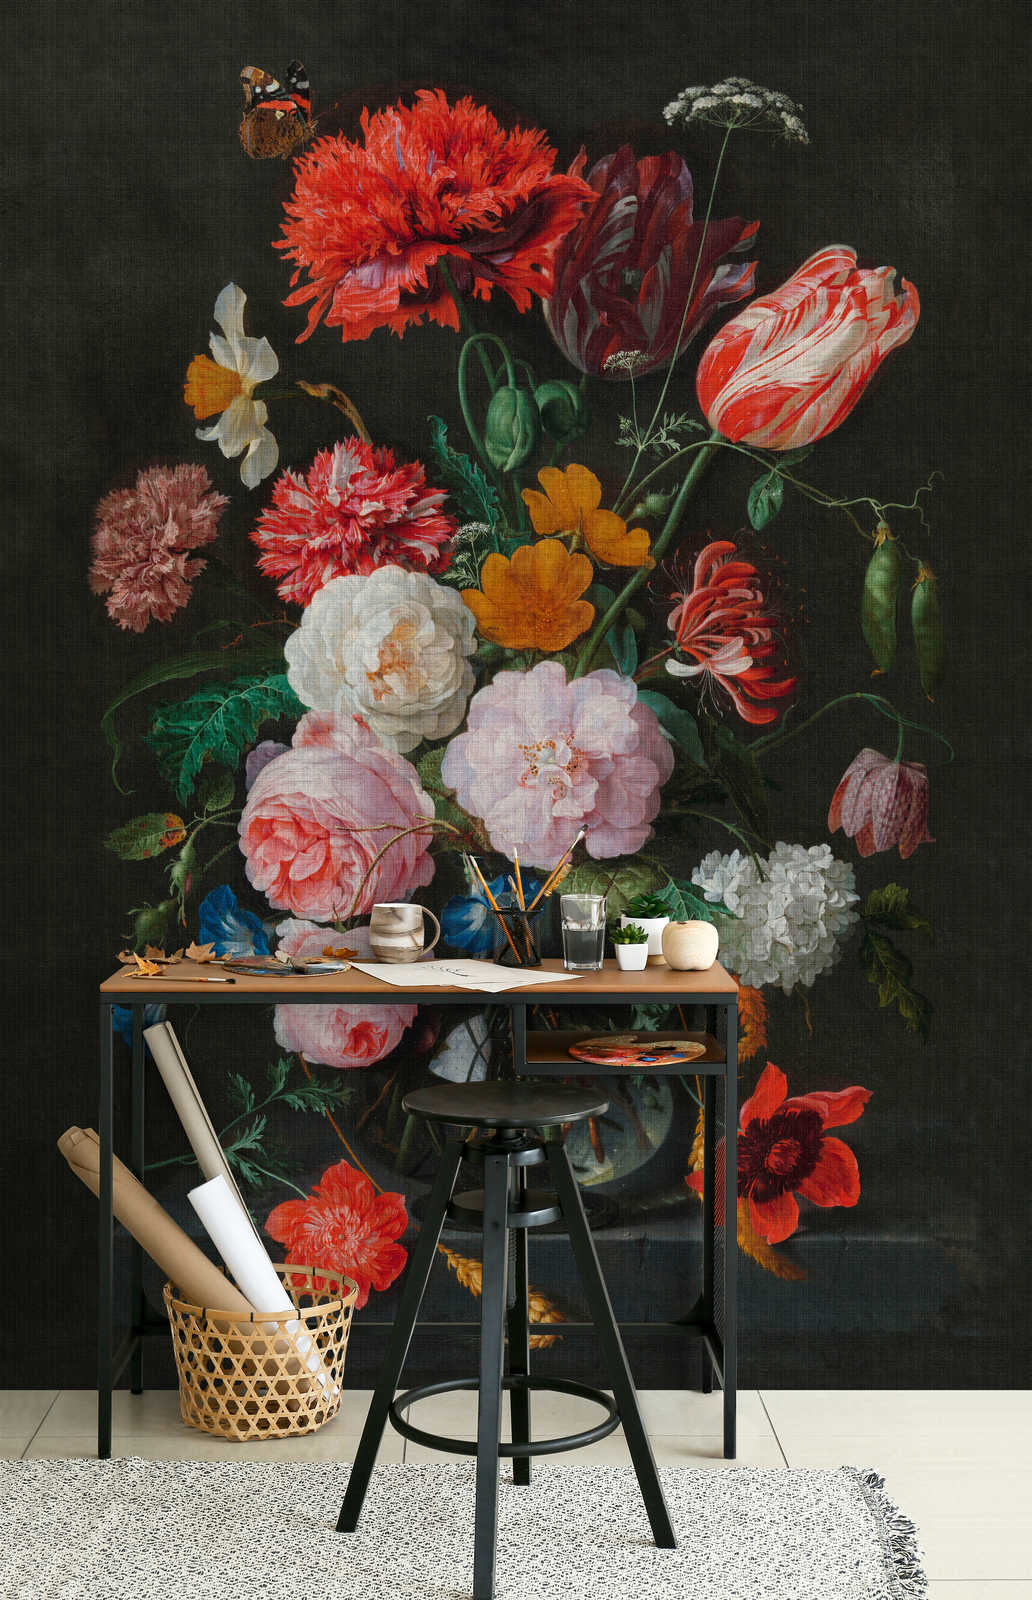             Kunstenaars Studio 4 - Muurschildering Bloemen Stilleven met Rozen
        